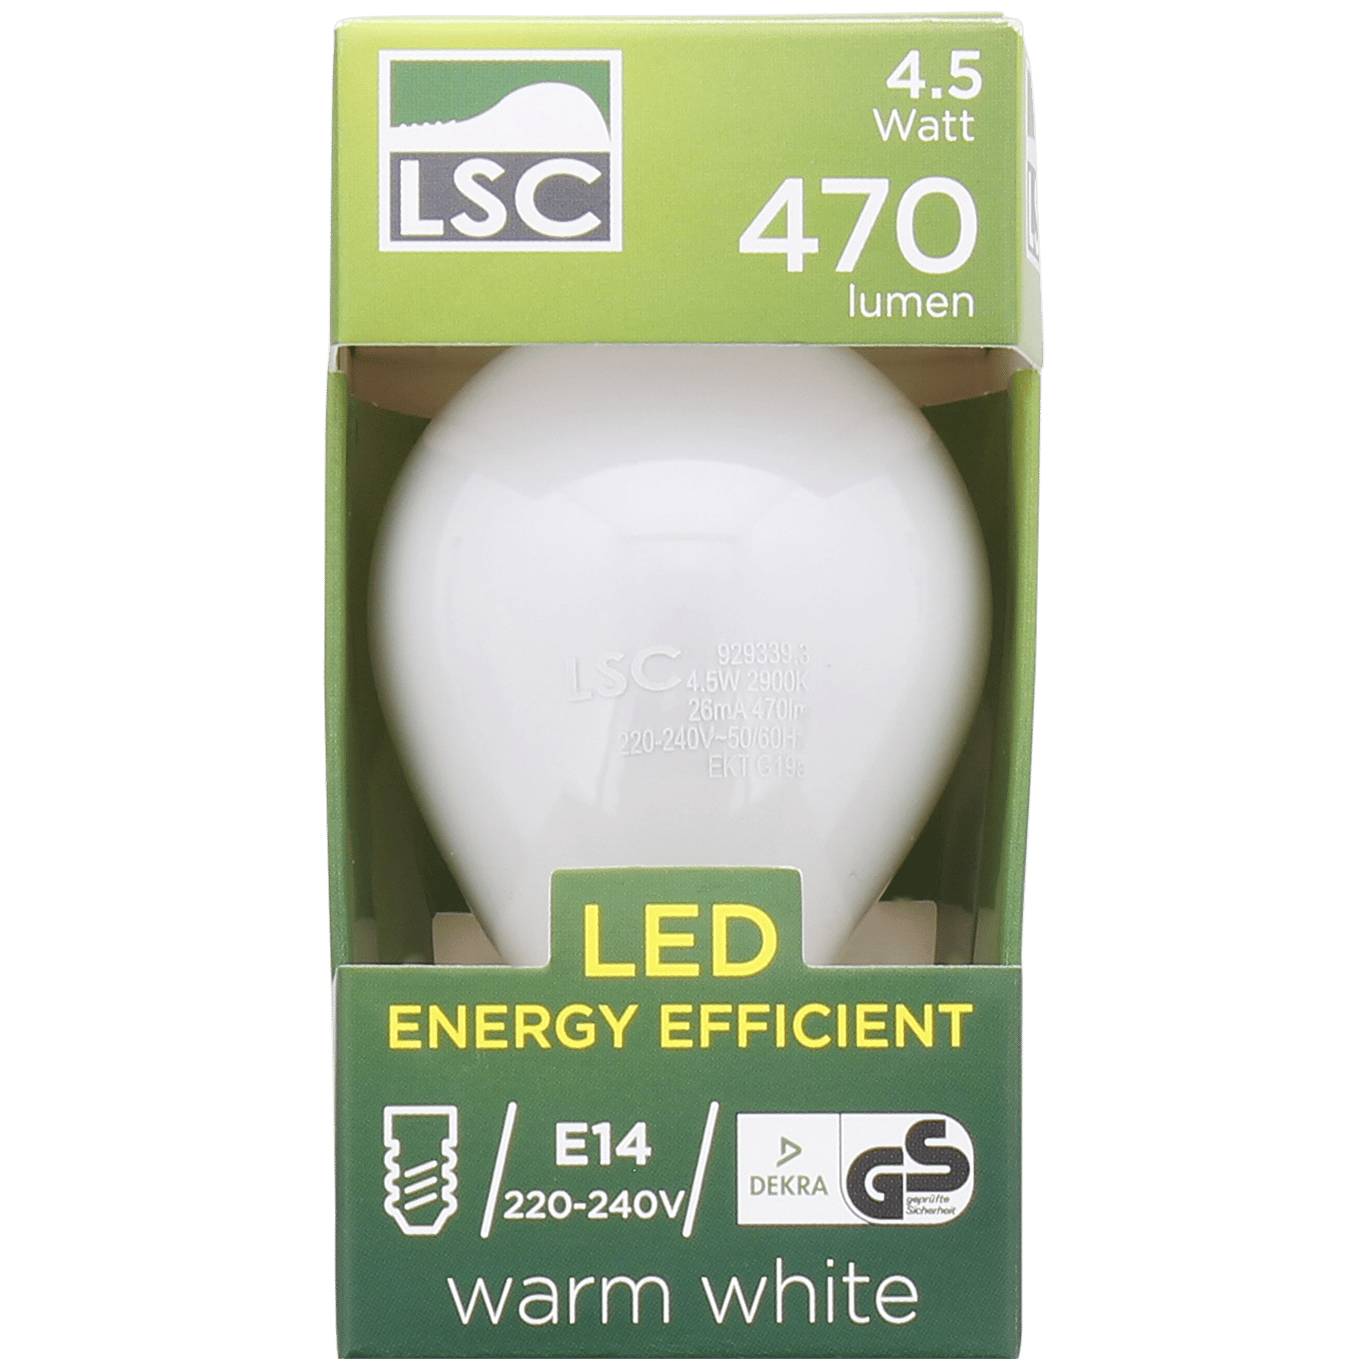 lsc soft tone kogel ledlamp action com